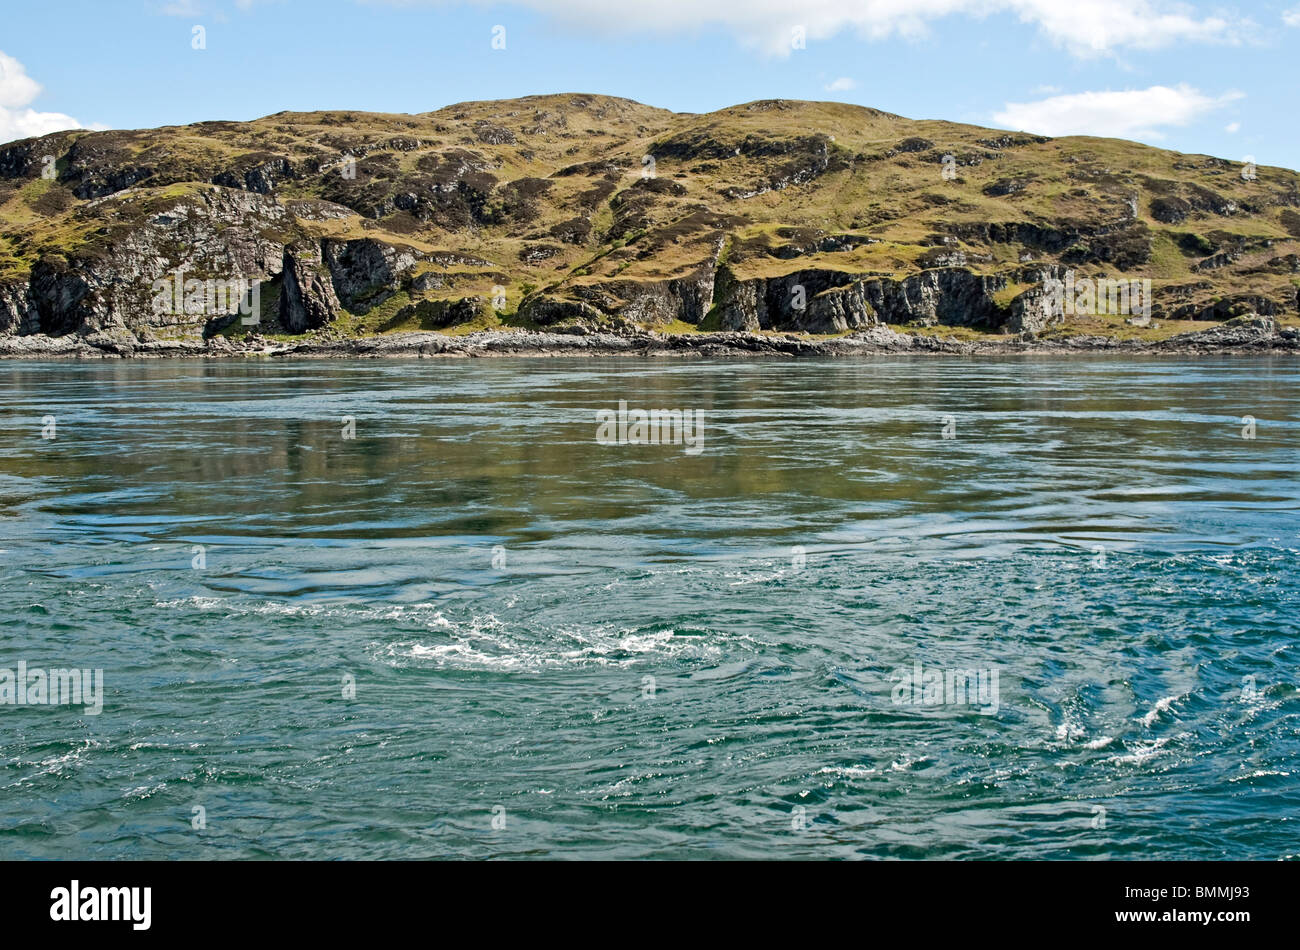 Les tourbillons dans le golfe de Corryvreckan entre les îles de Jura et Scarba dans les îles occidentales de l'Écosse Banque D'Images